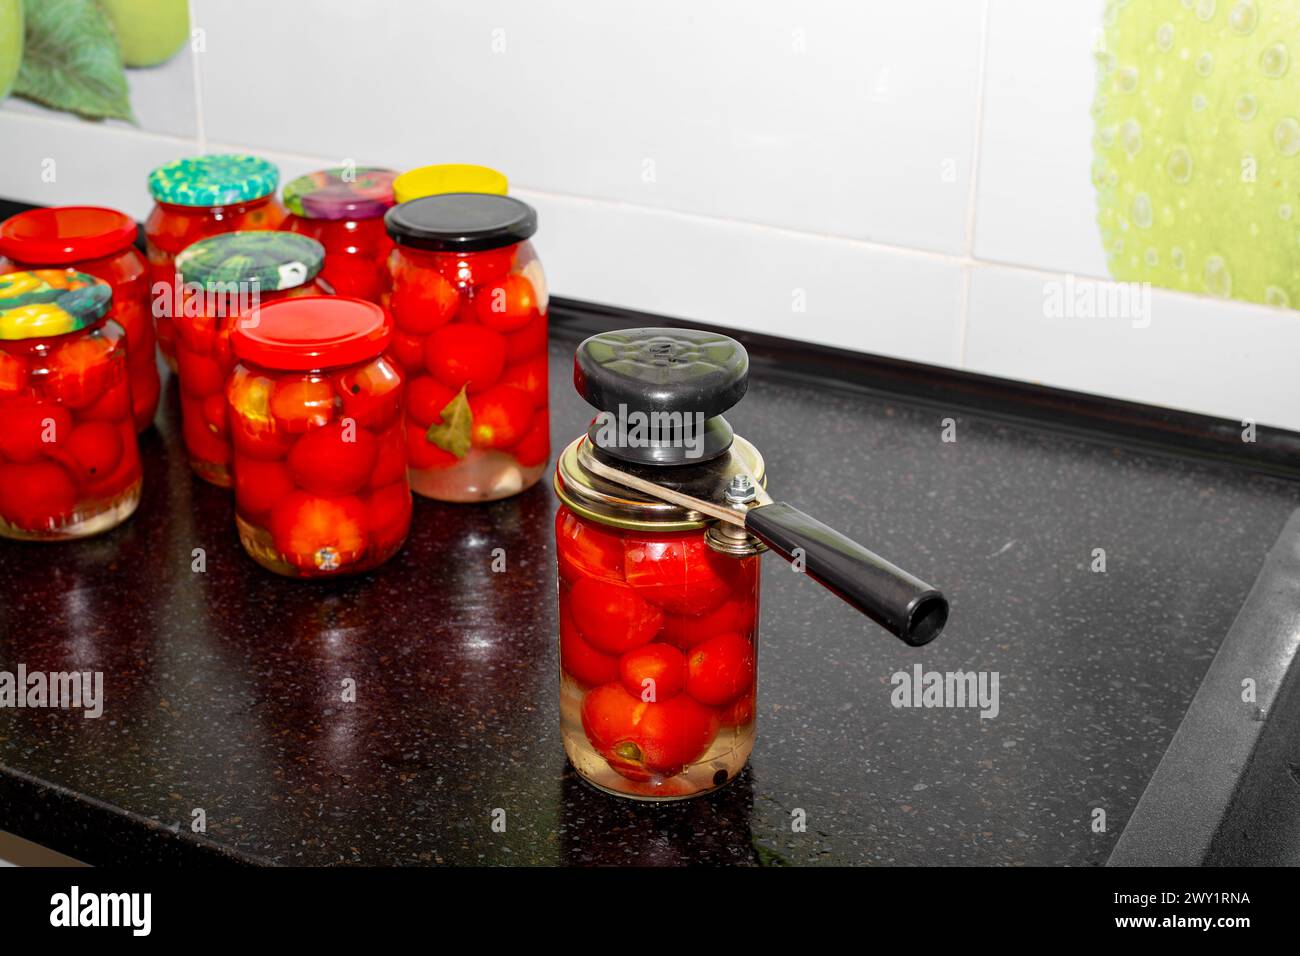 Conserve di pomodori. Vasetti di vetro pieni di pomodori rossi maturi immersi in salamoia. Avvitare i coperchi su un recipiente con una macchina per cucire. Foto Stock